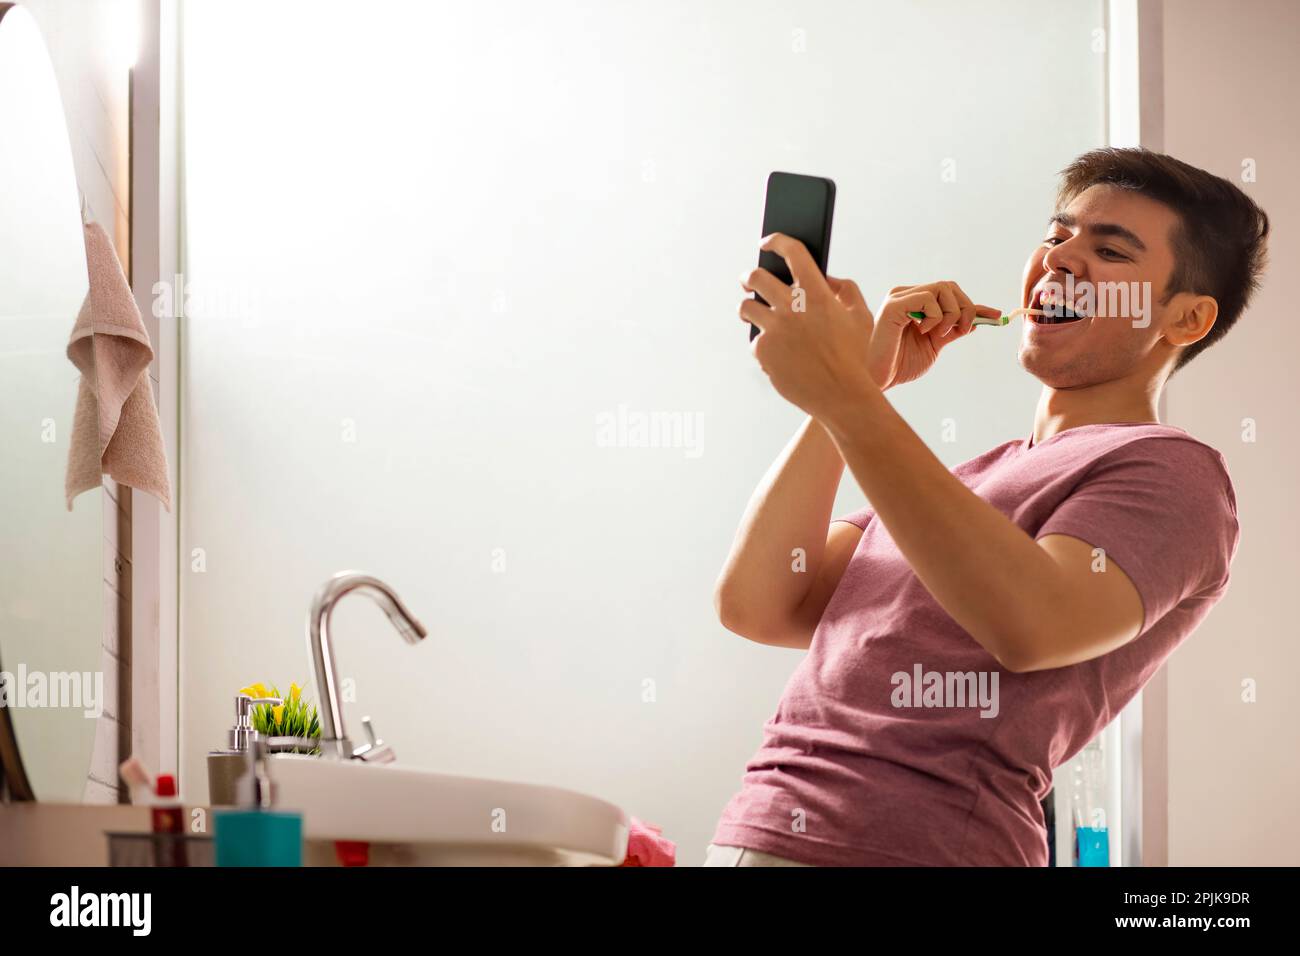 Ein junger Mann, der im Badezimmer Zähne putzt Stockfoto